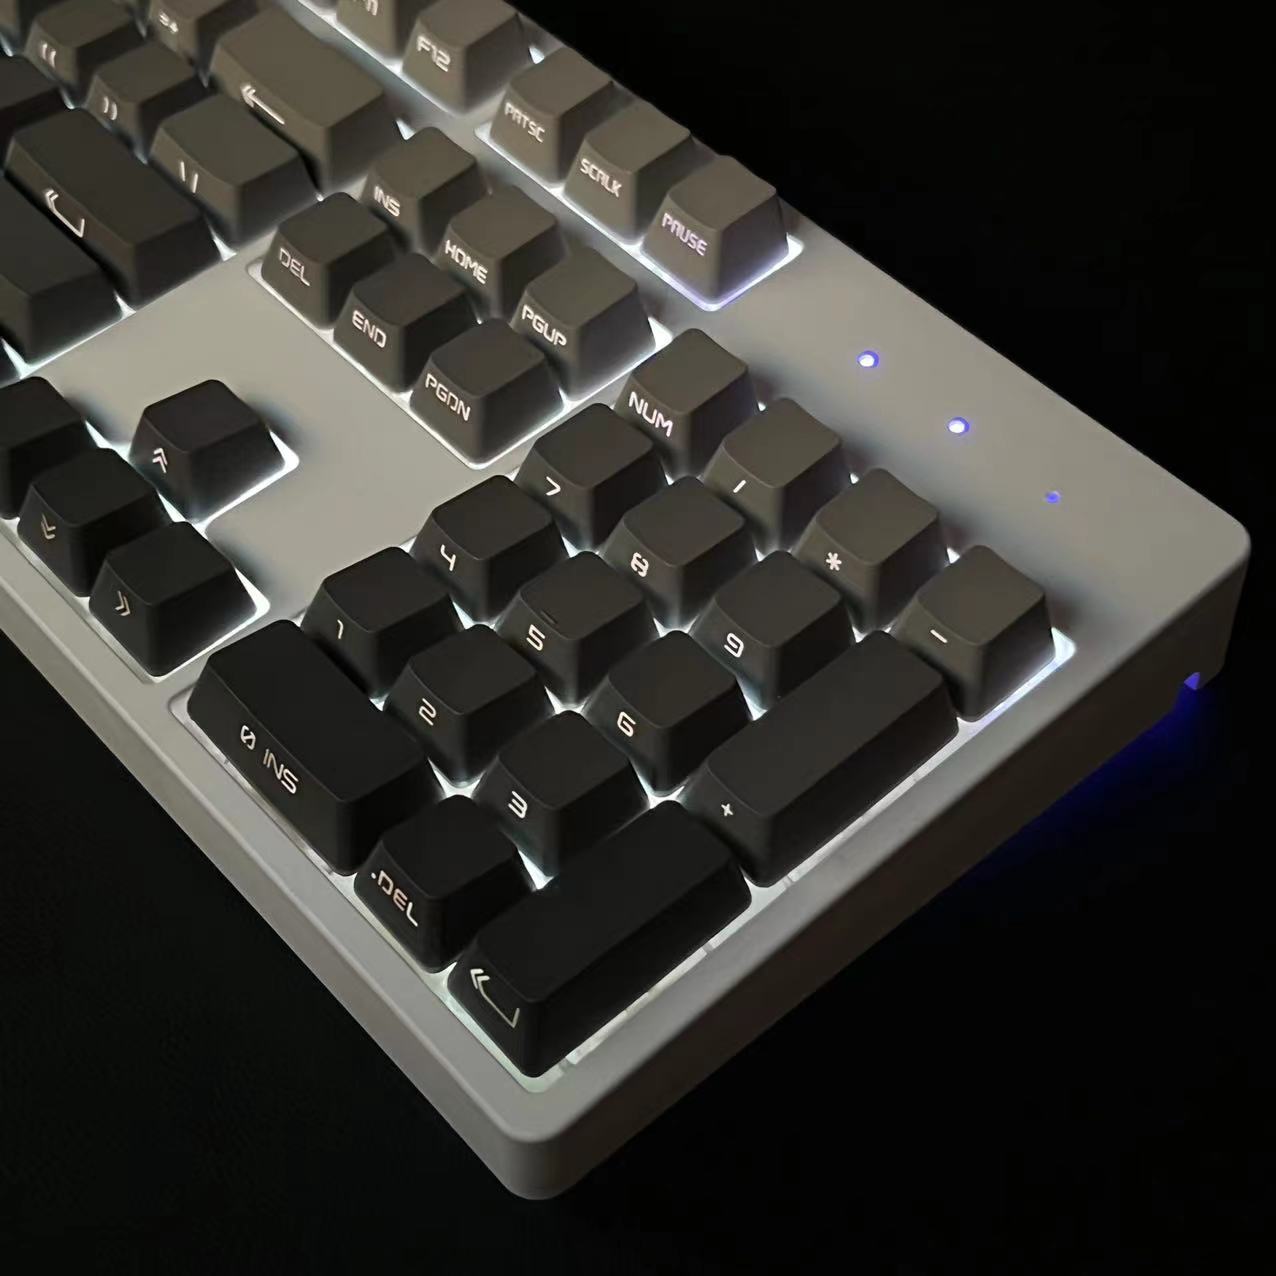 佳宫MK104键机械键盘全透明白光微尘极昼腮红雾蓝侧刻静音热插拔